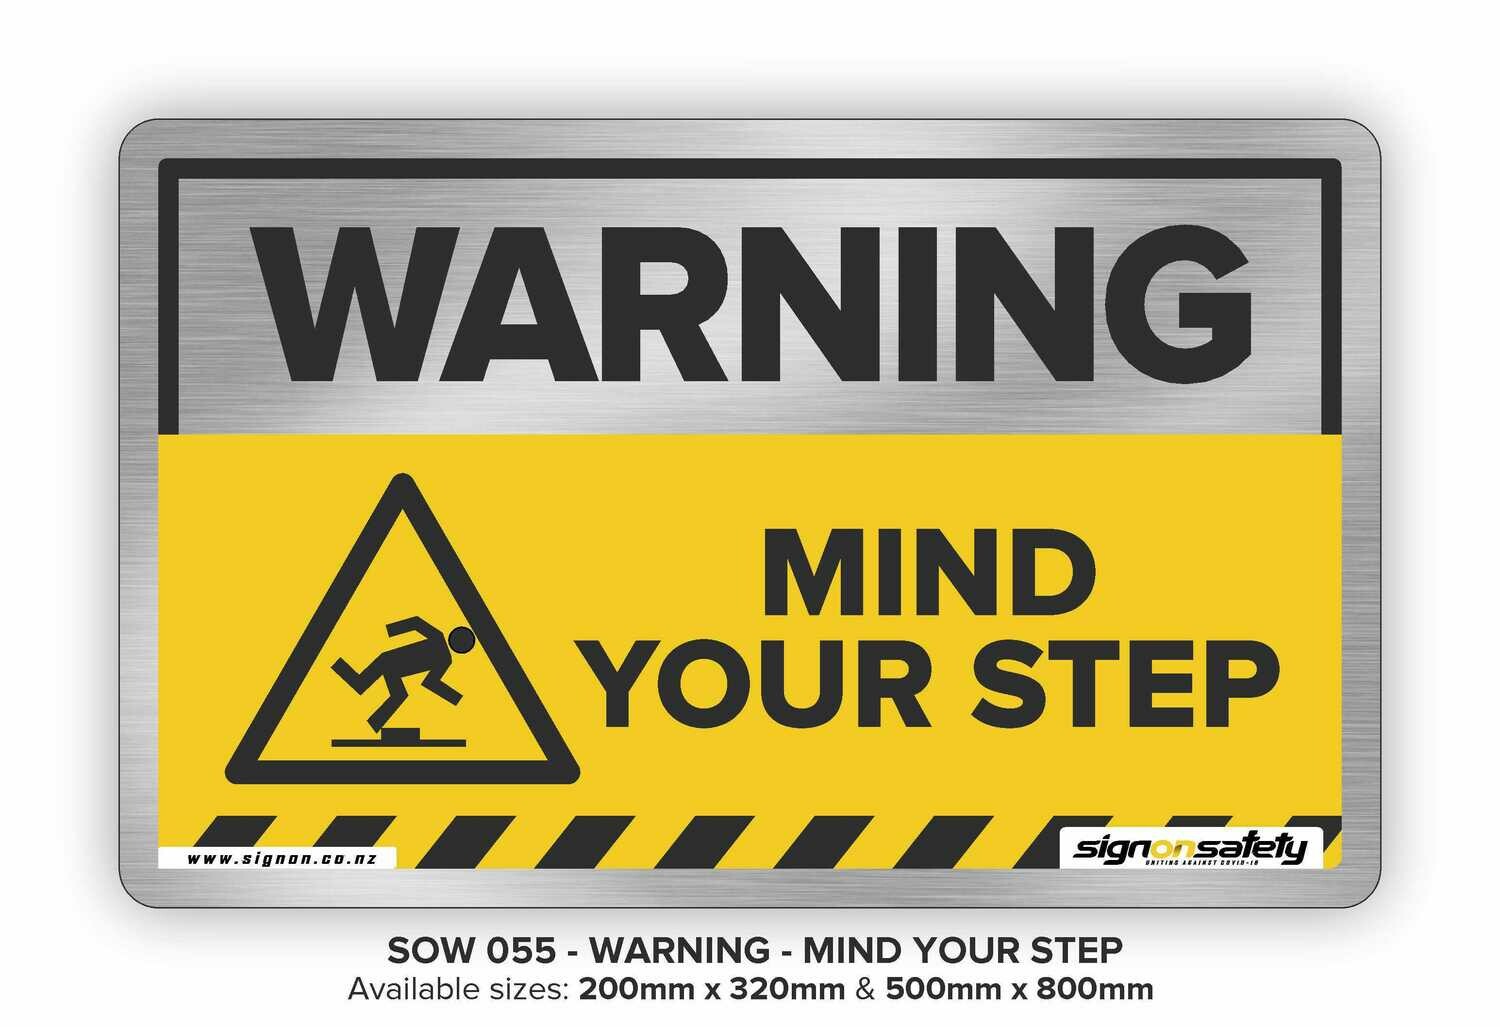 Warning - Mind Your Step v2